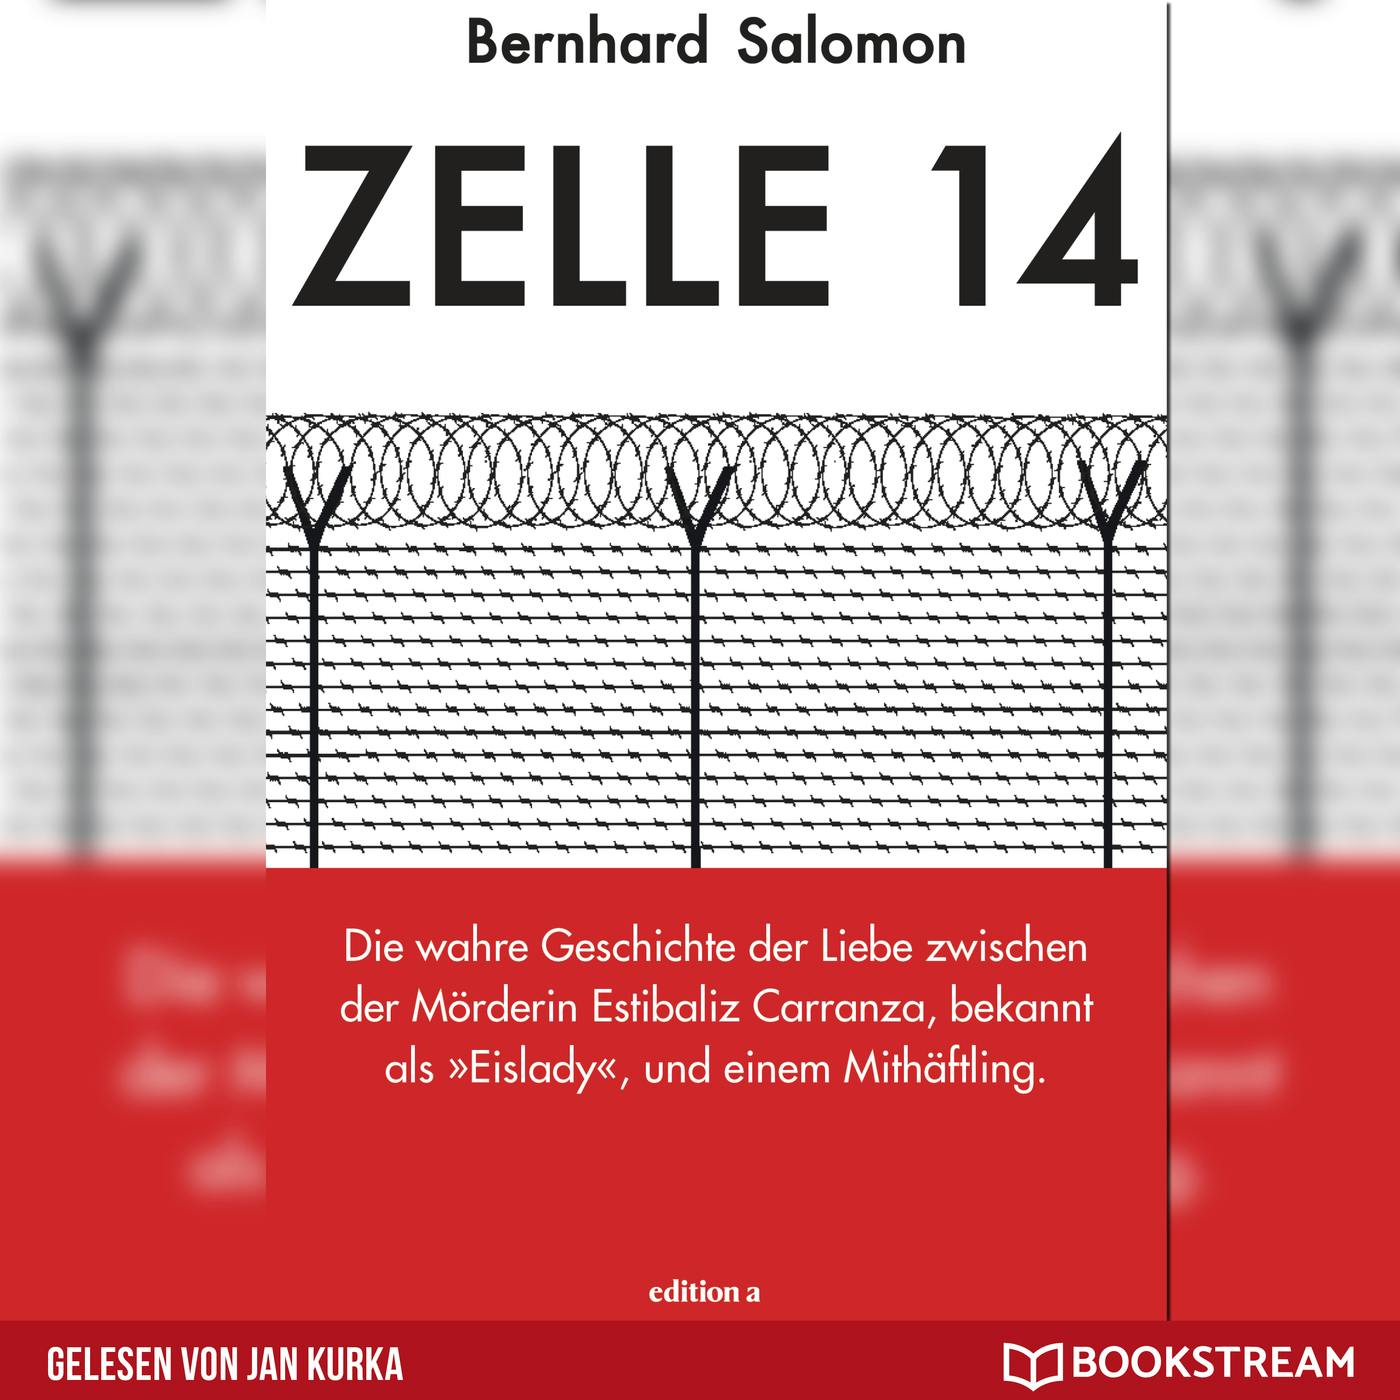 Zelle 14 - Die wahre Geschichte der Liebe zwischen der Mörderin Estibaliz Carranza, bekannt als Eislady, und einem Mithäftling (Ungekürzt) - Bernhard Salomon